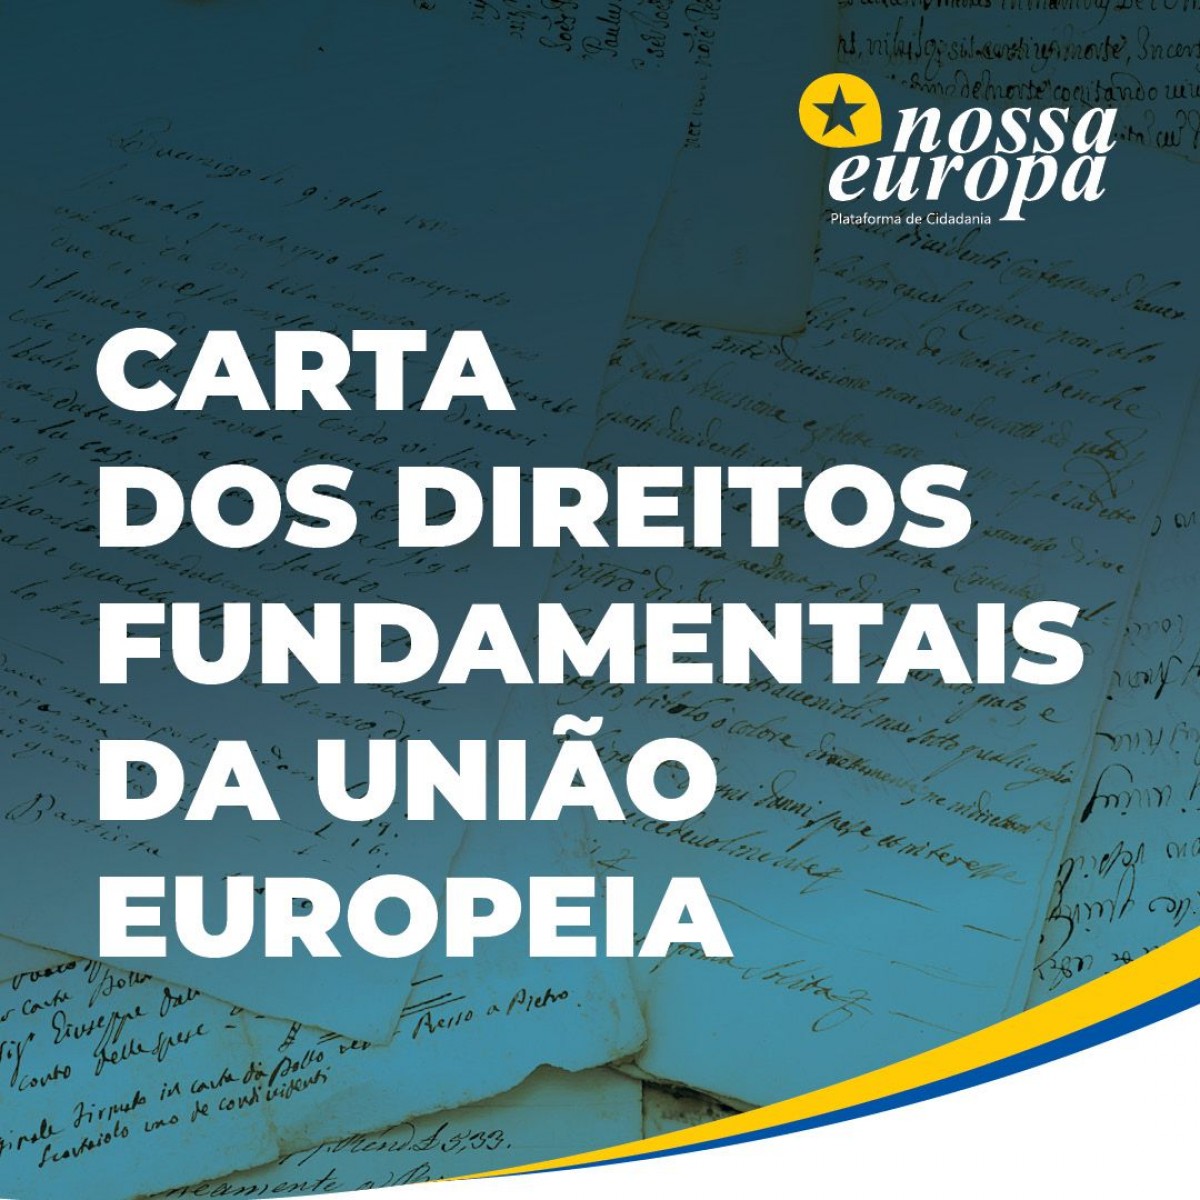 Nossa Europa publica versão da Carta dos Direitos Fundamentais